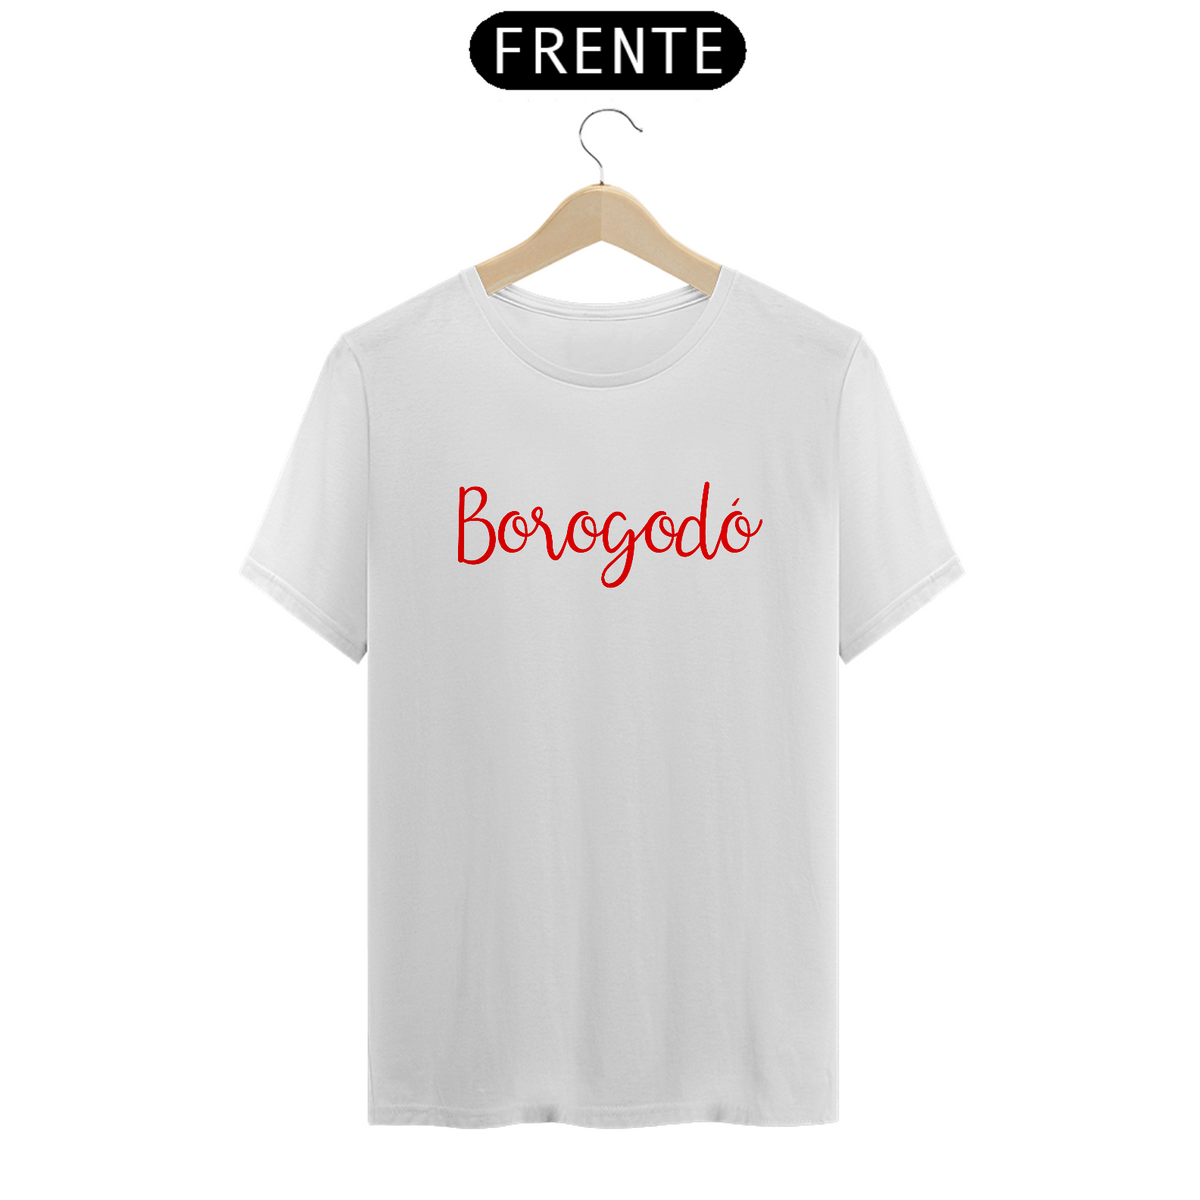 Nome do produto: Camiseta Borogodó